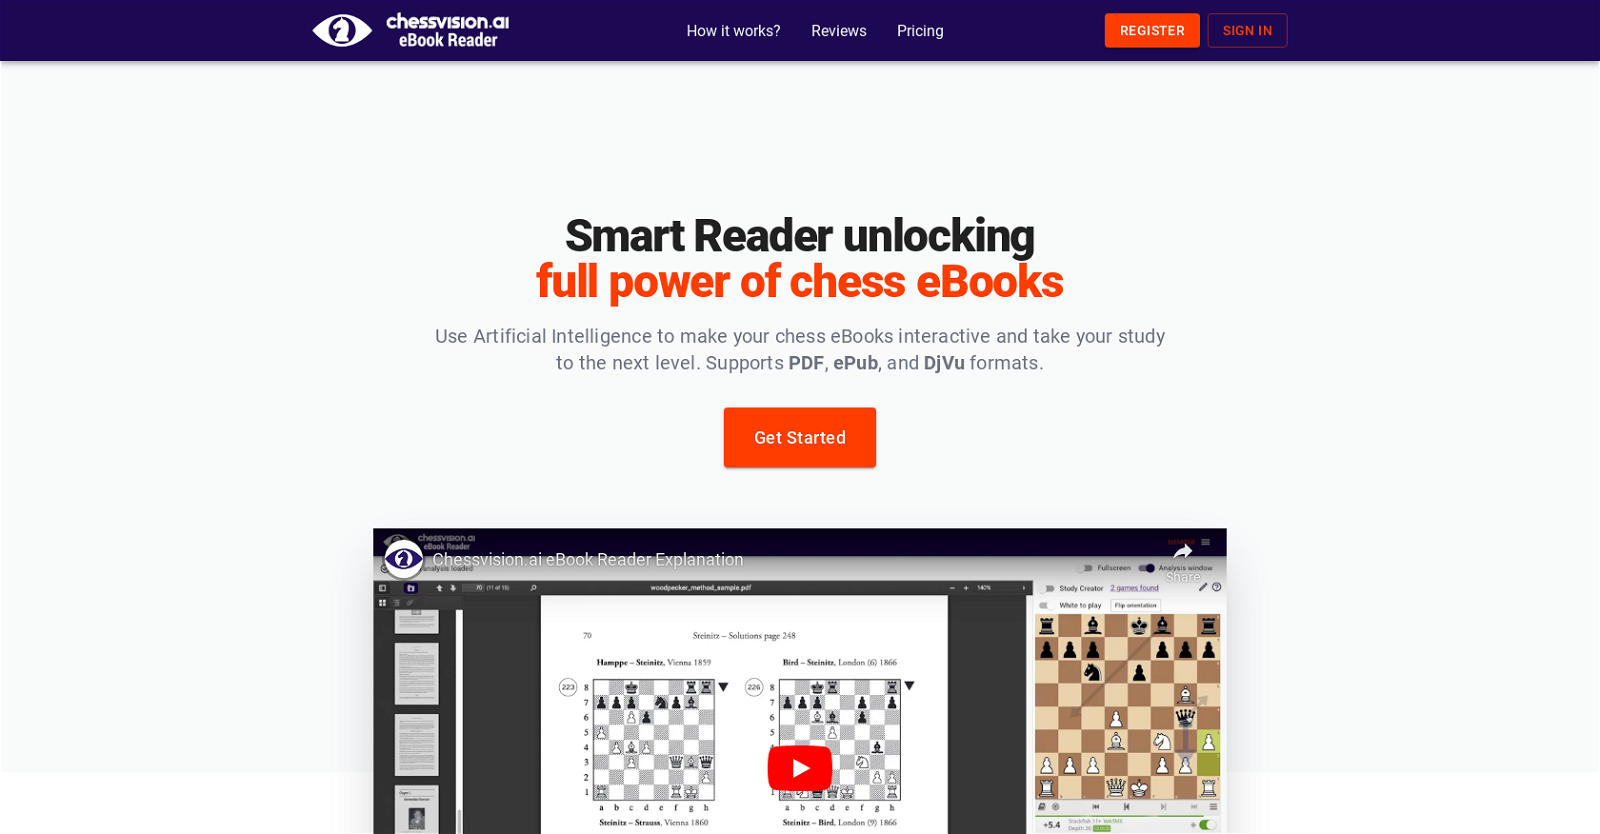 eBook Chessvision website